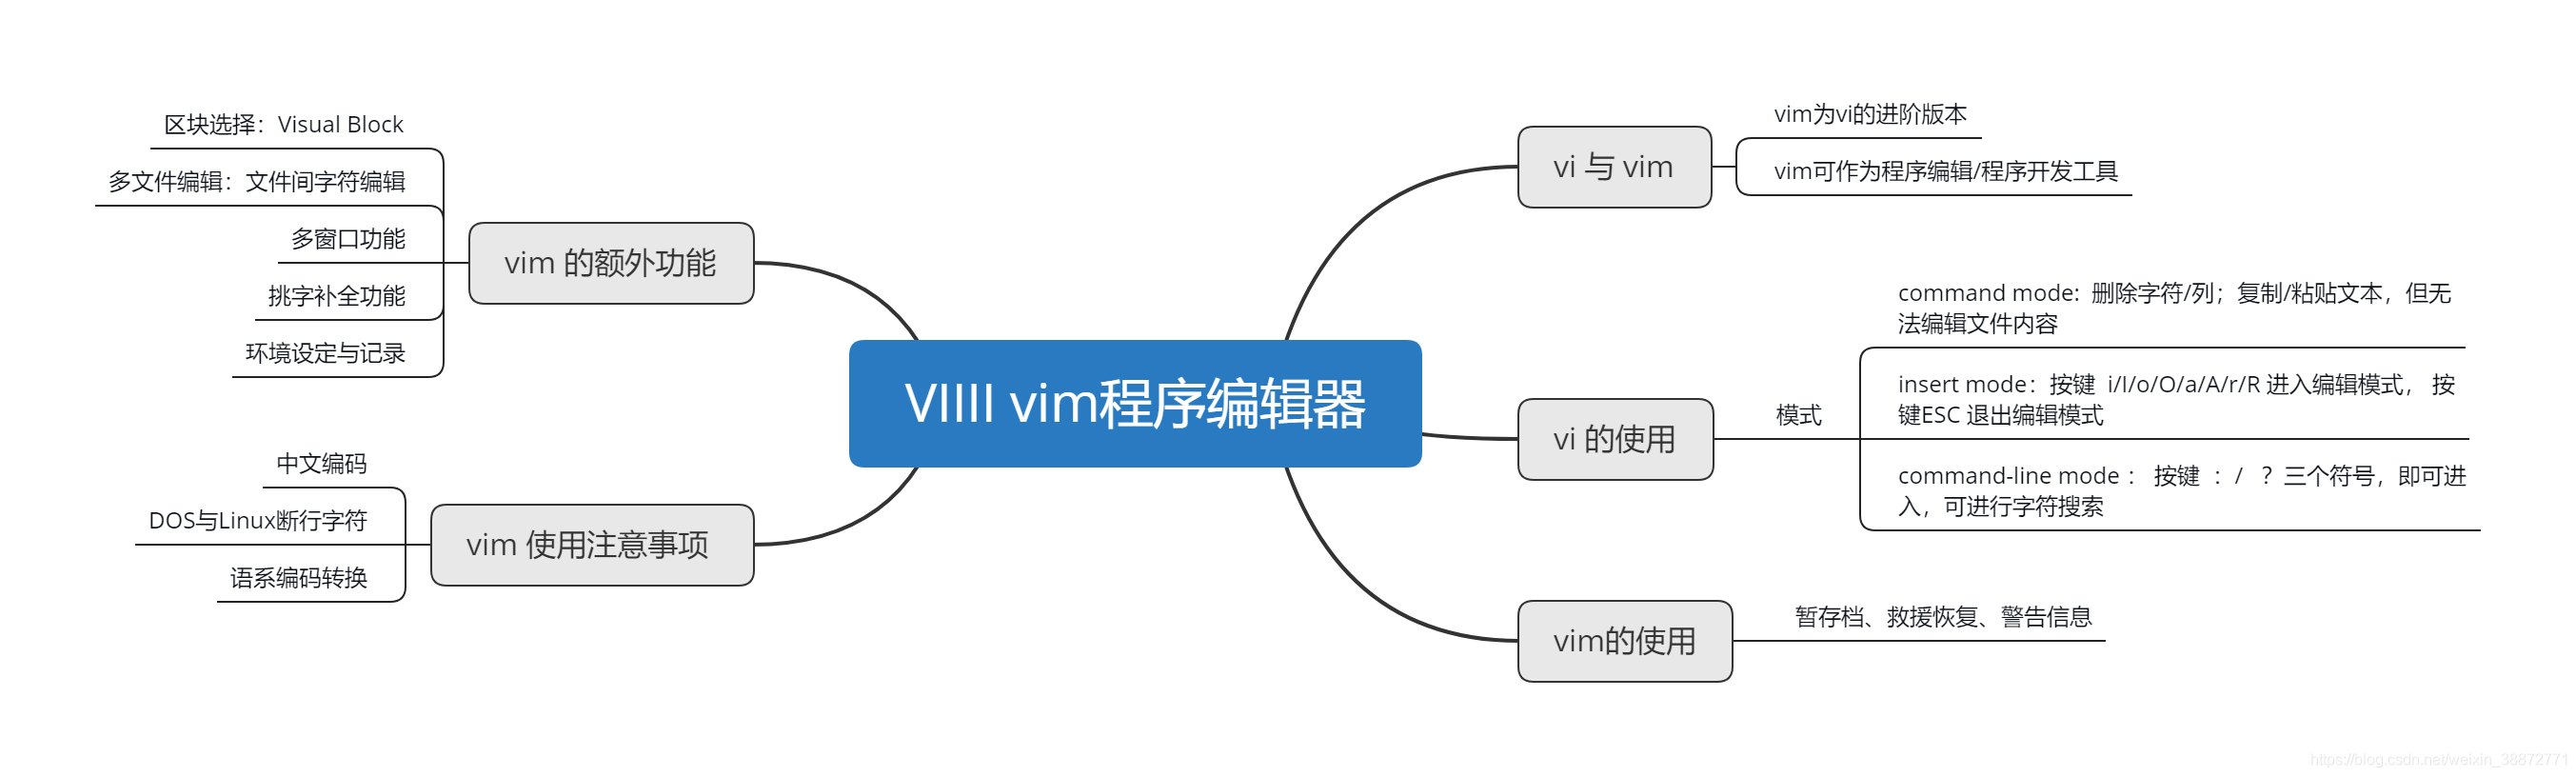 vi/vim